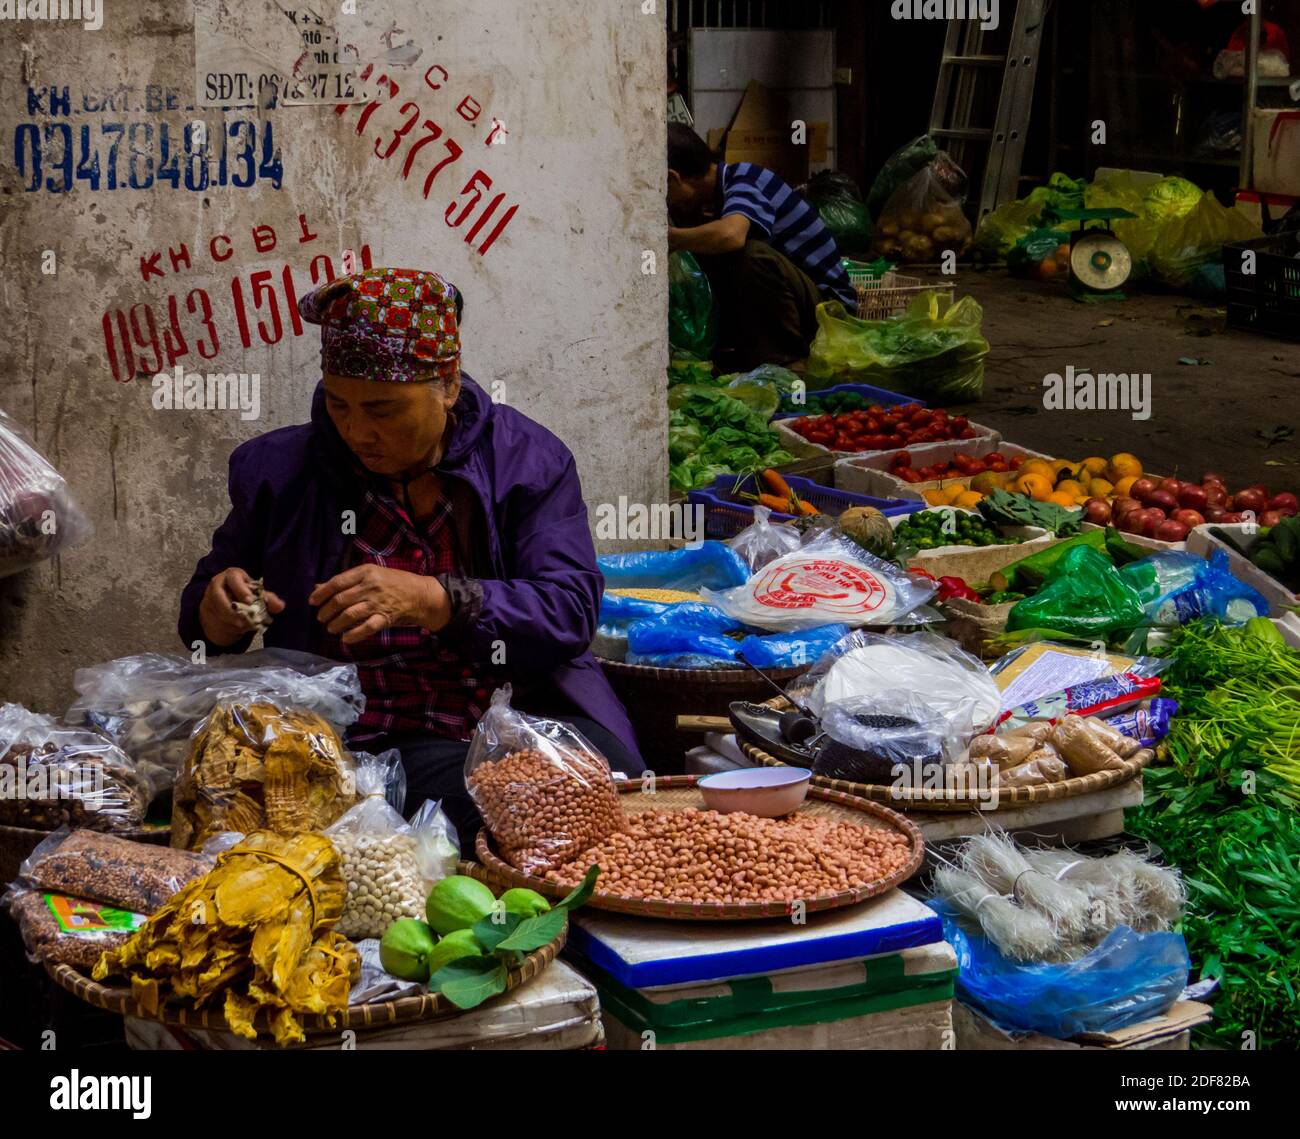 Street Market in Hanoi, Vietnam Stock Photo